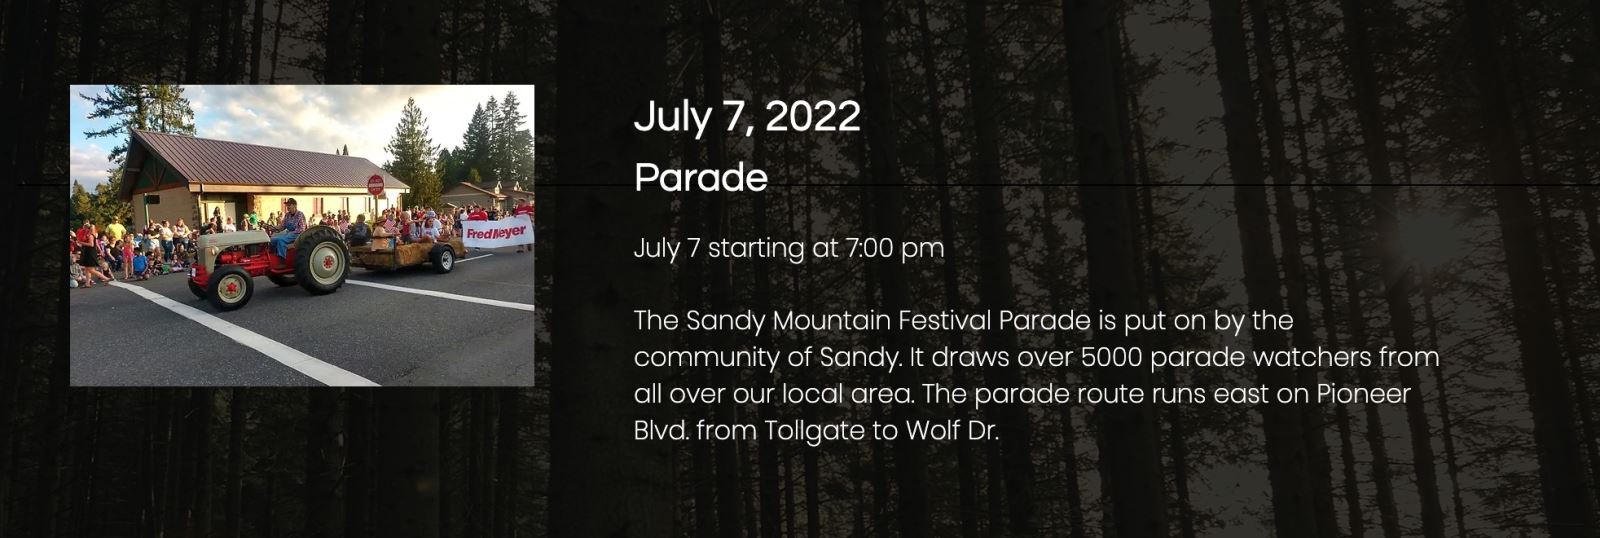 Sandy Mountain Festival Parade 2022